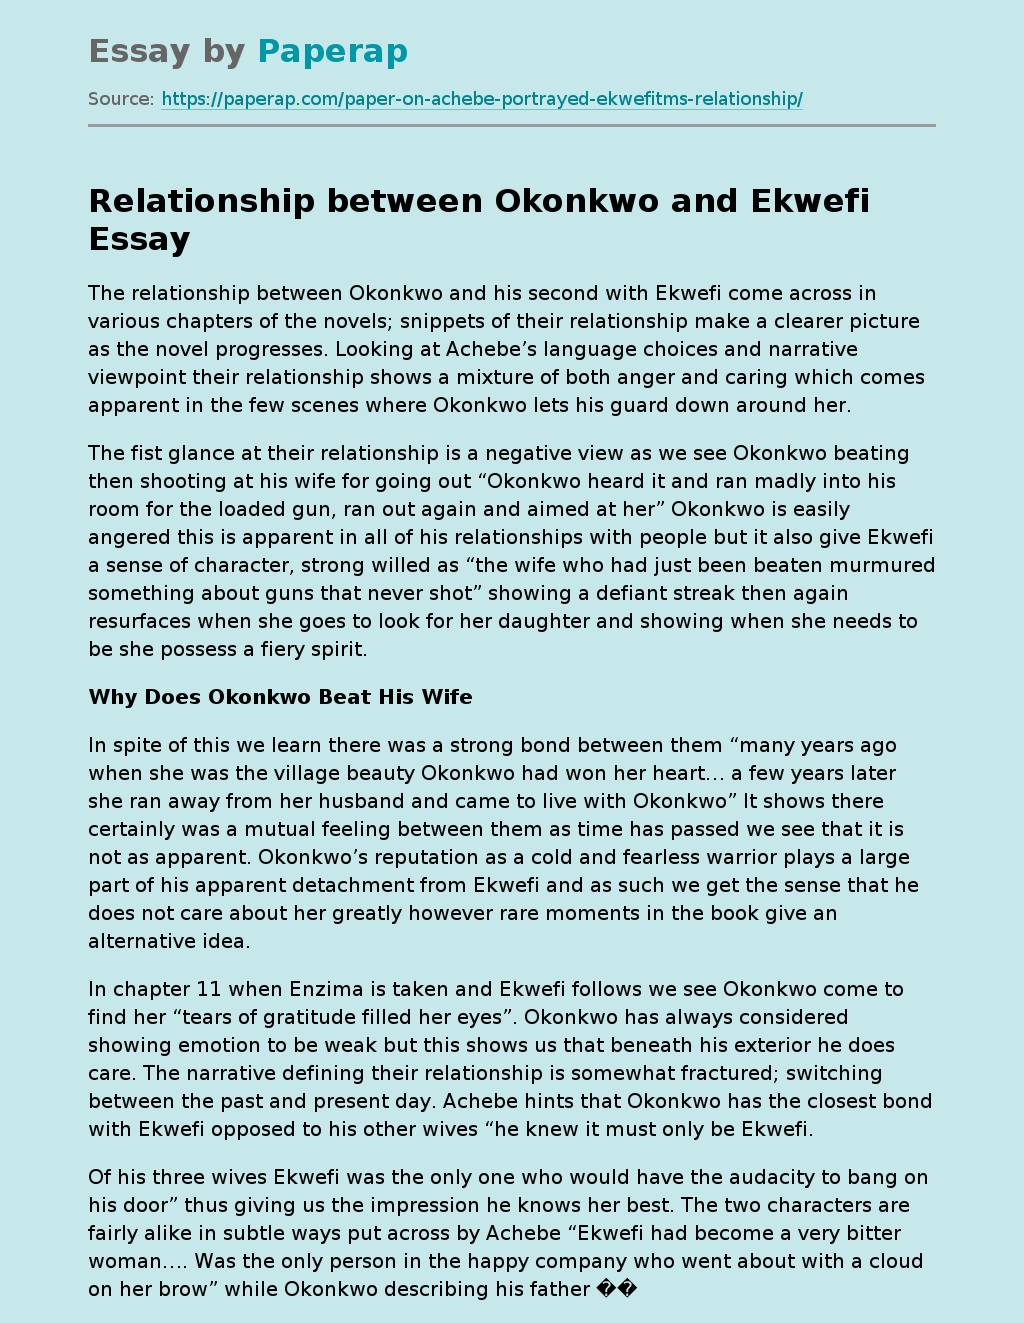 Relationship between Okonkwo and Ekwefi